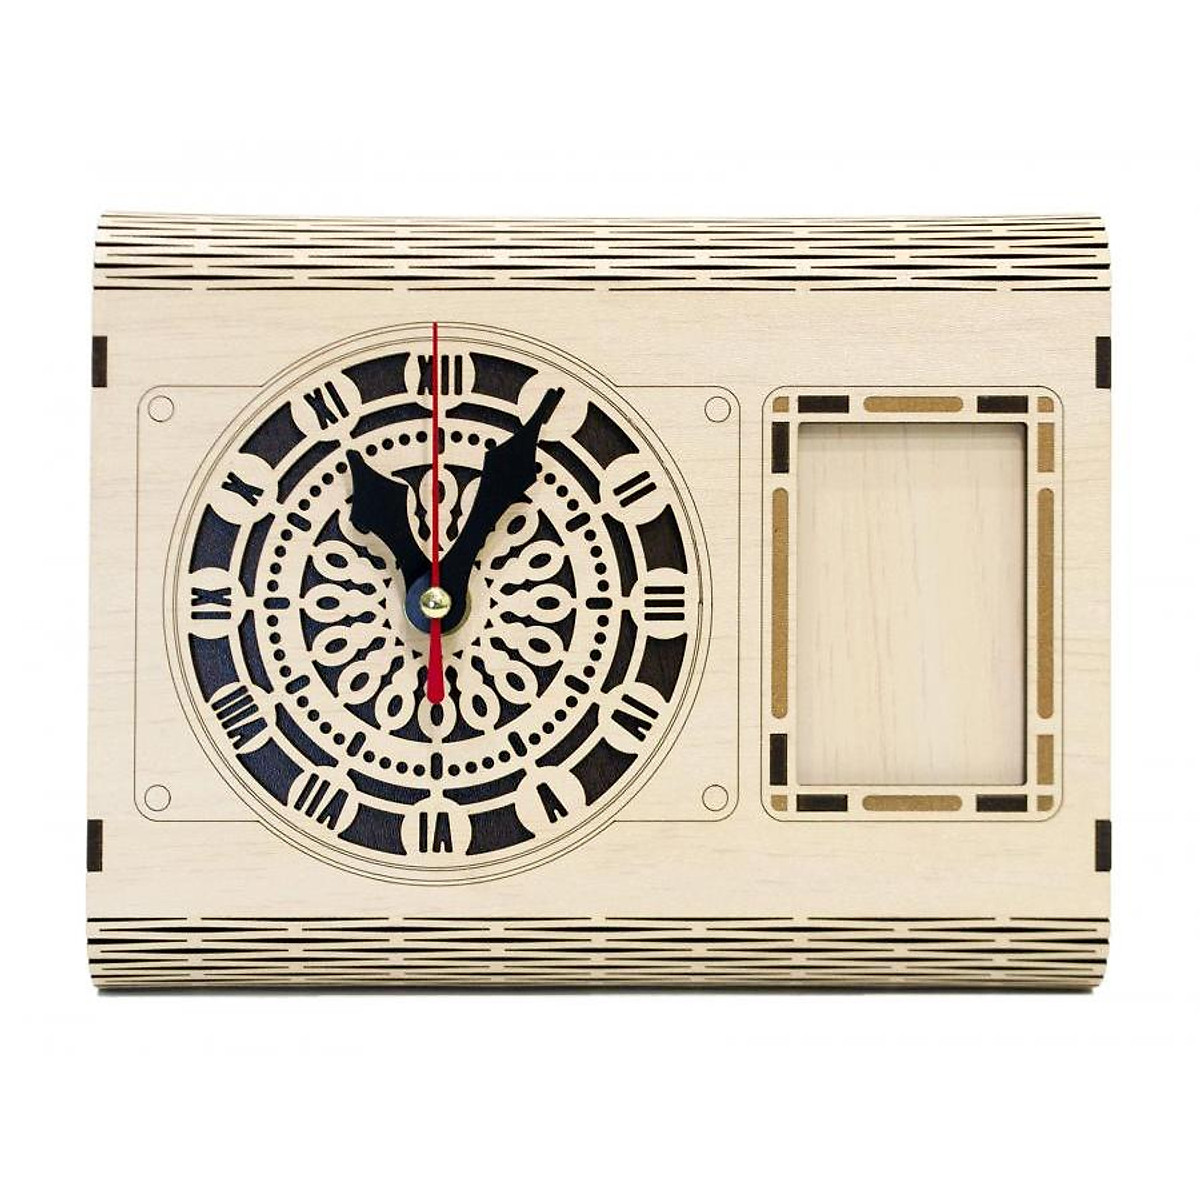 Đồng hồ gỗ lắp ráp  lịch vạn niên  D05 quà tặng lịch gỗ trang trí têt TRENDDECOR.VN